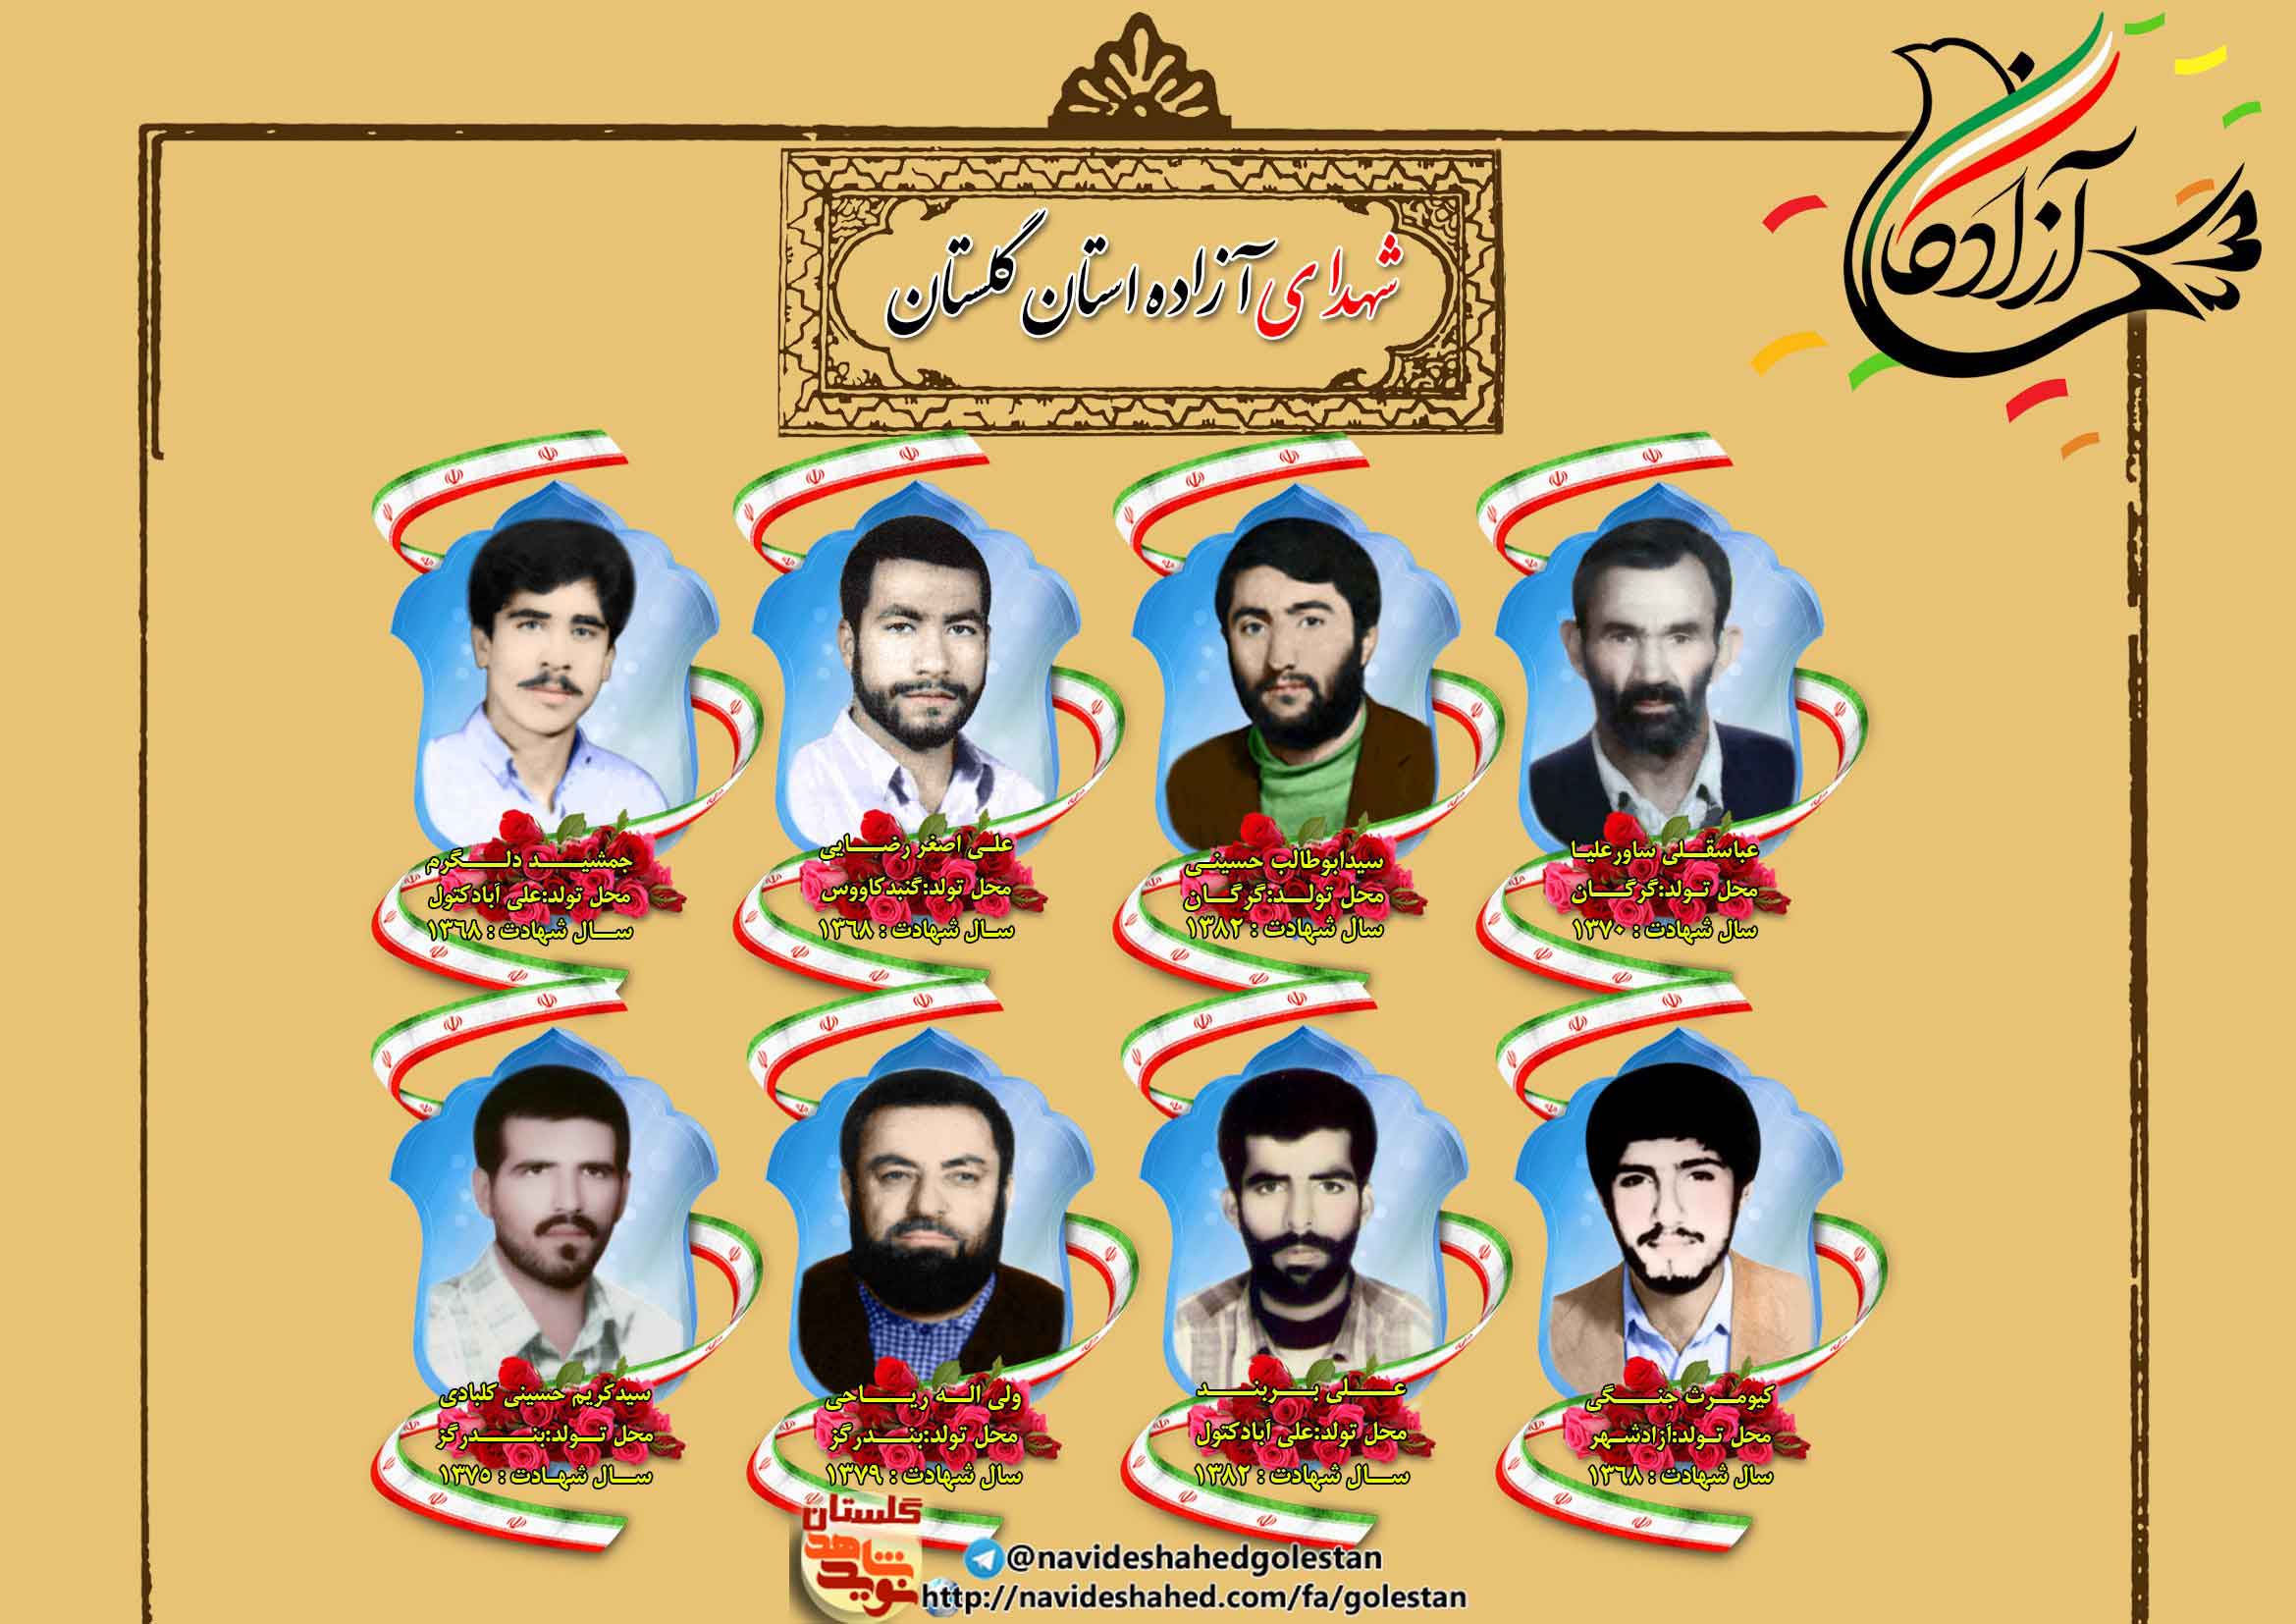 پوستر ویژه شهدای آزاده استان گلستان